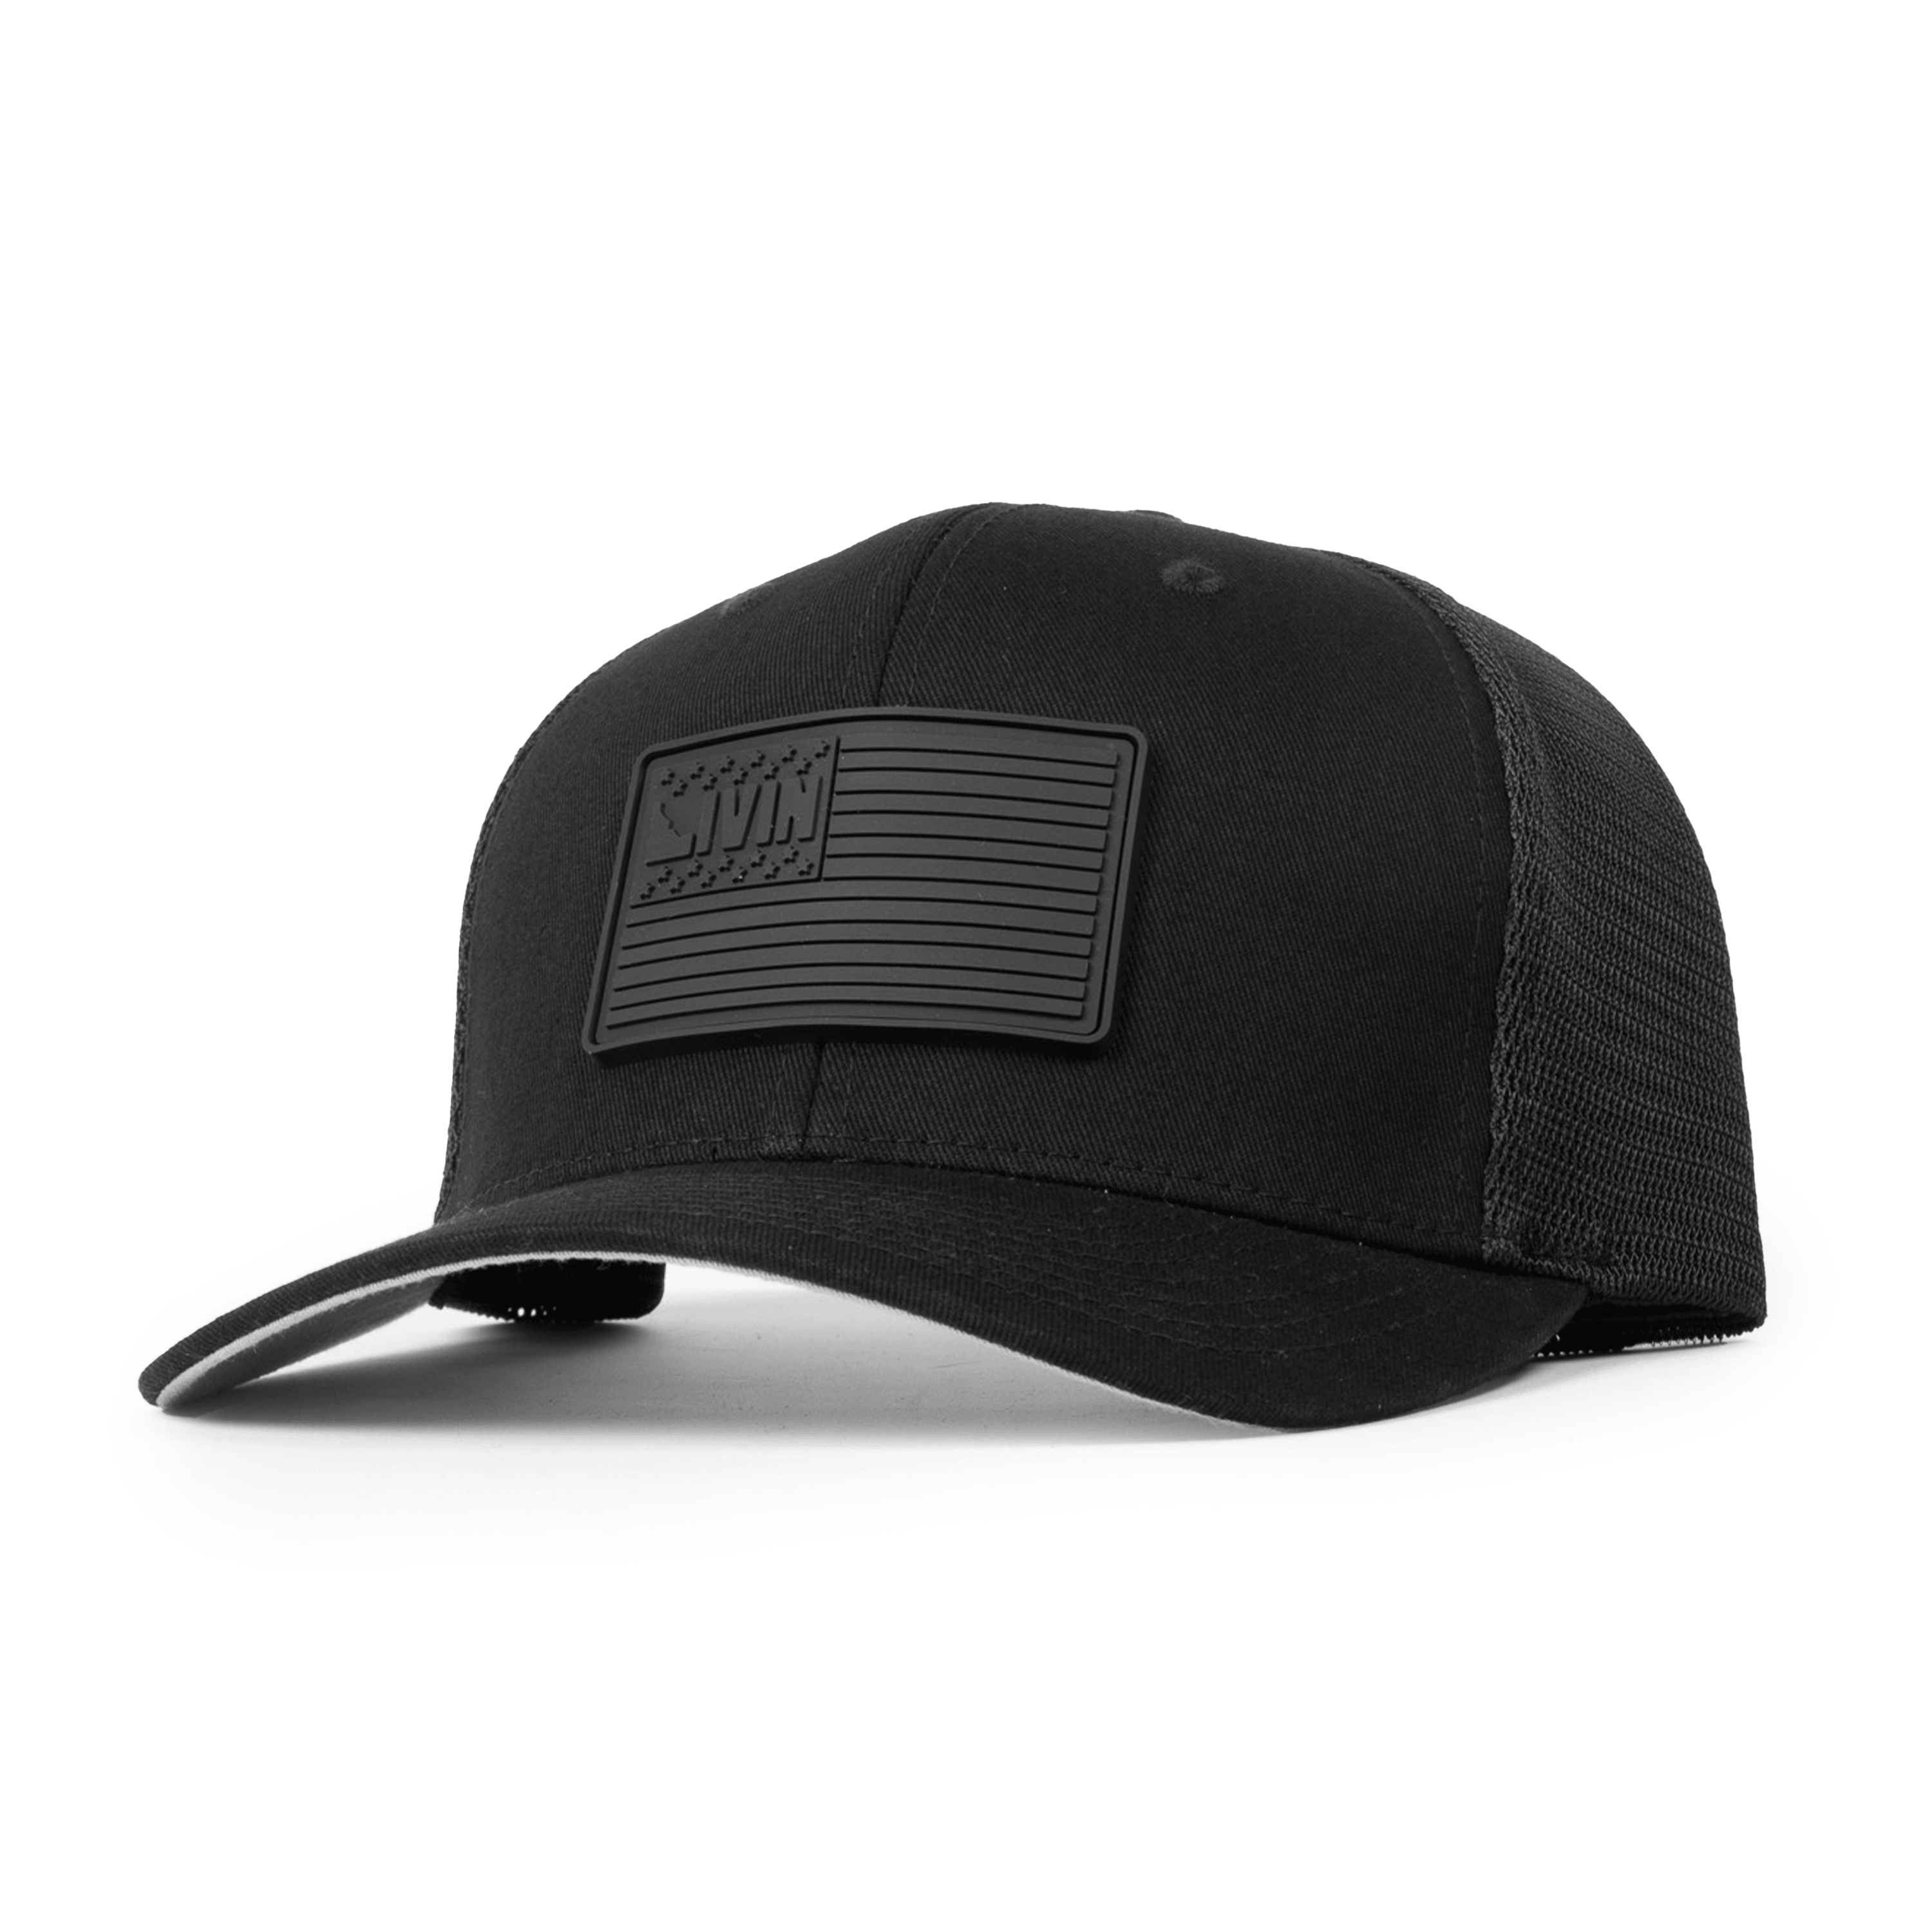 Blackout Edition American Flag Flexfit Hat Black / S/M